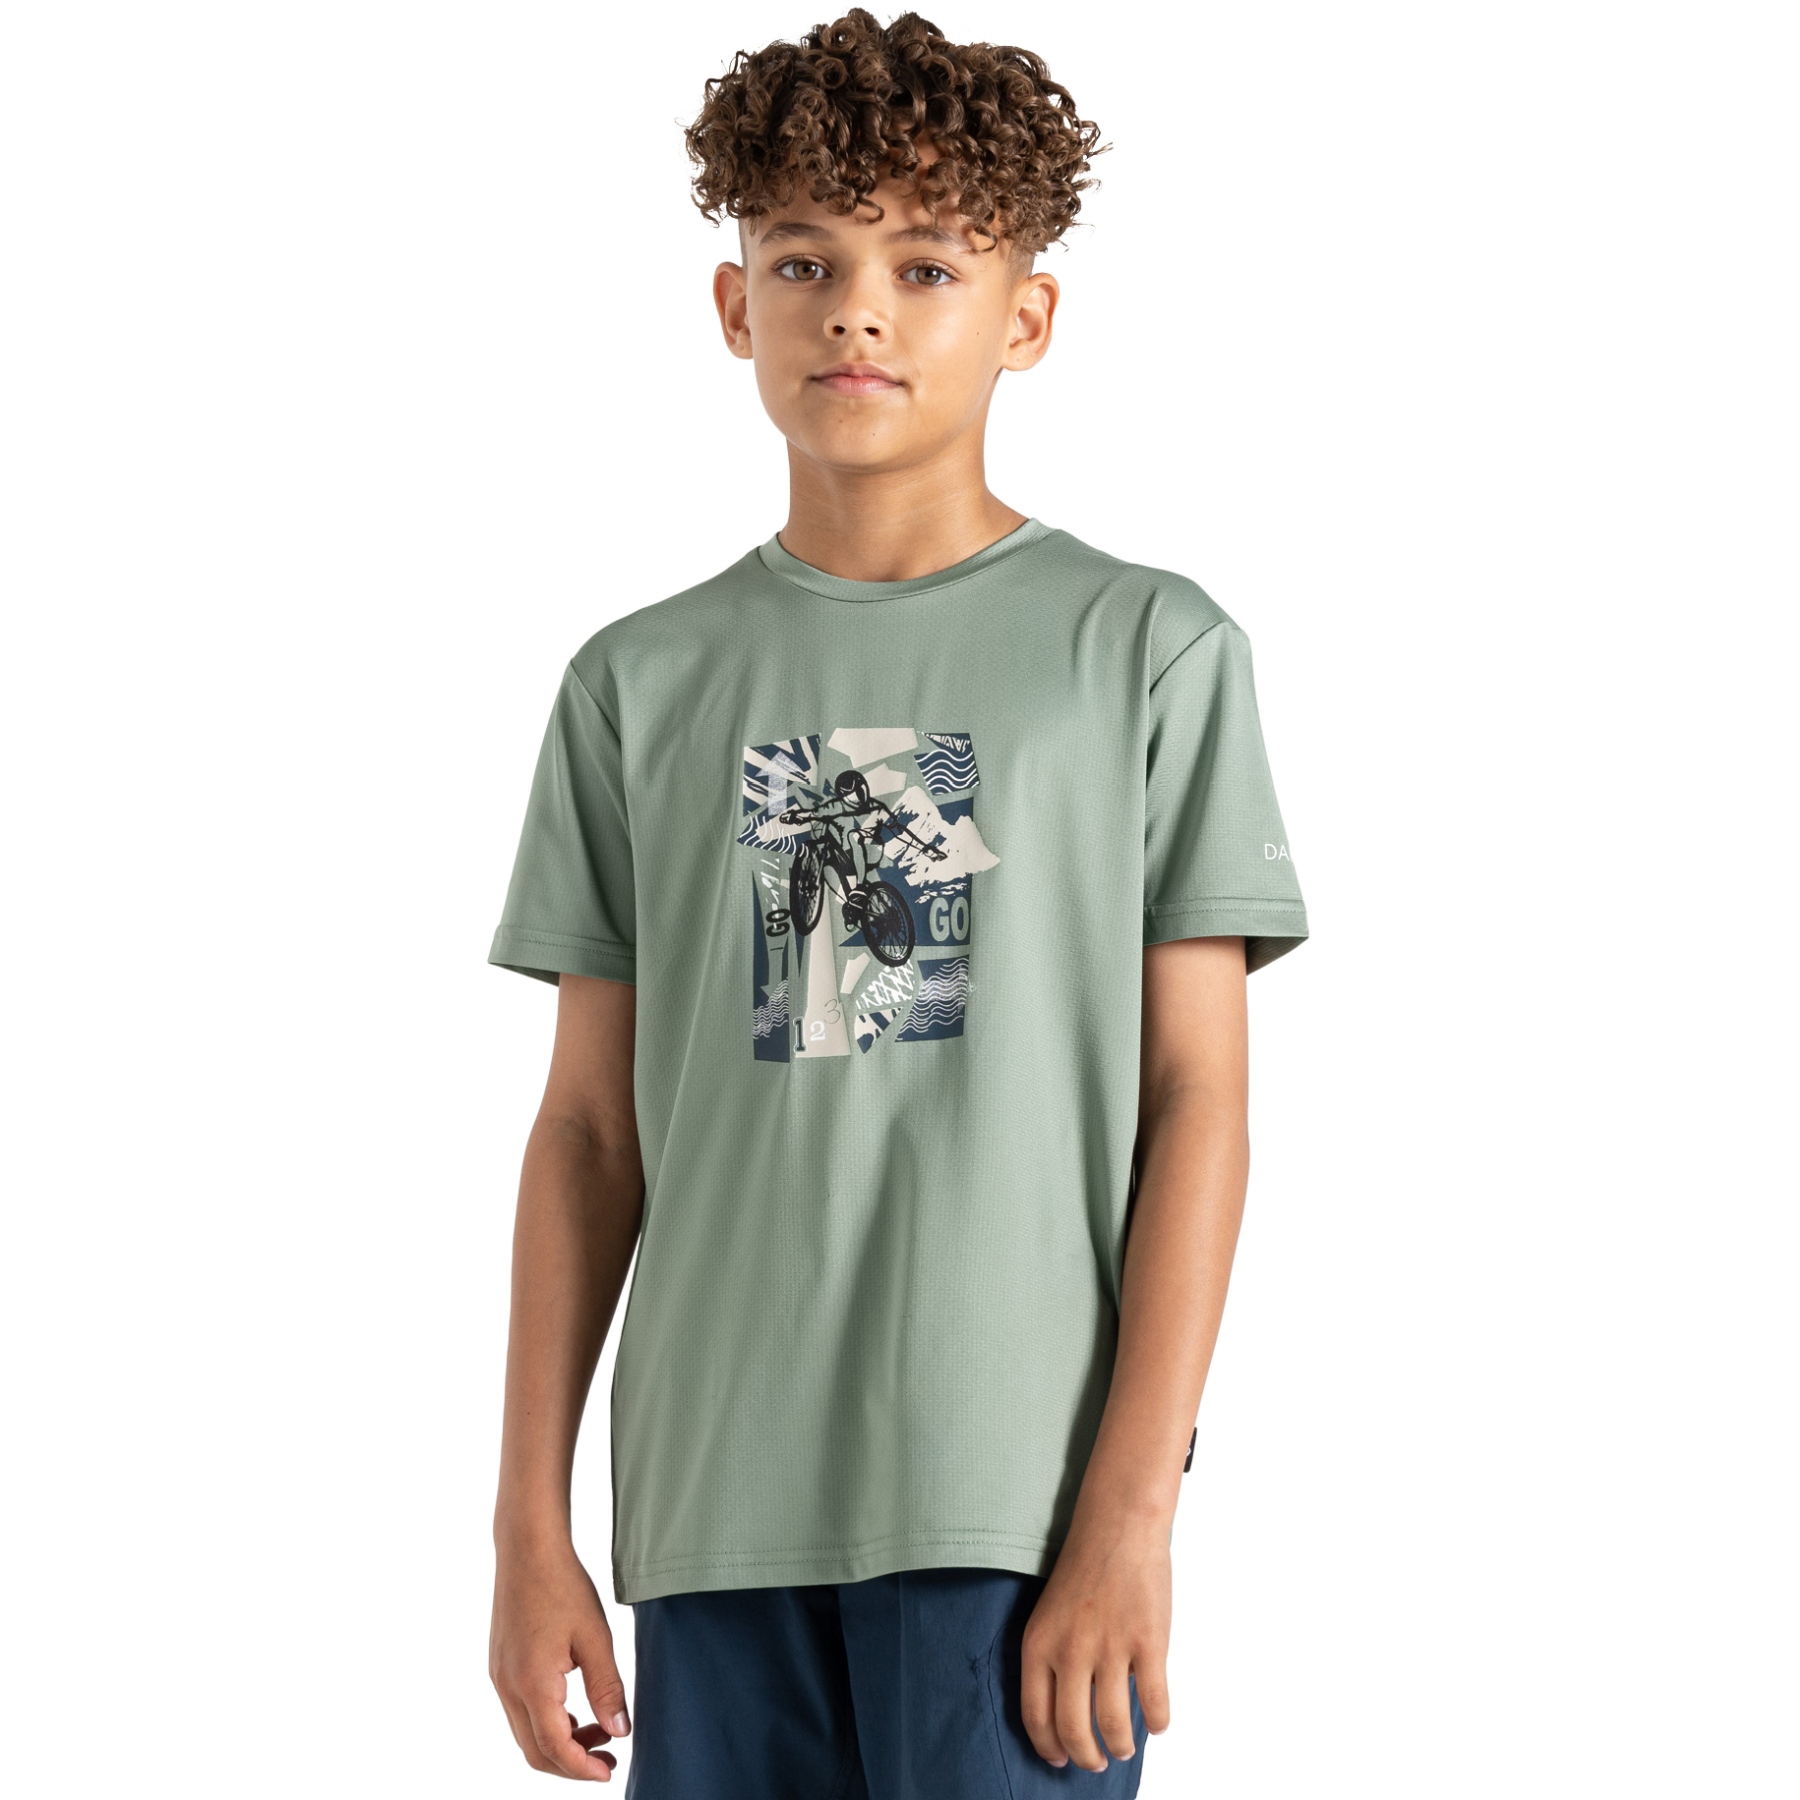 Produktbild von Dare 2b Amuse II T-Shirt Kinder - RHI Lily Pad